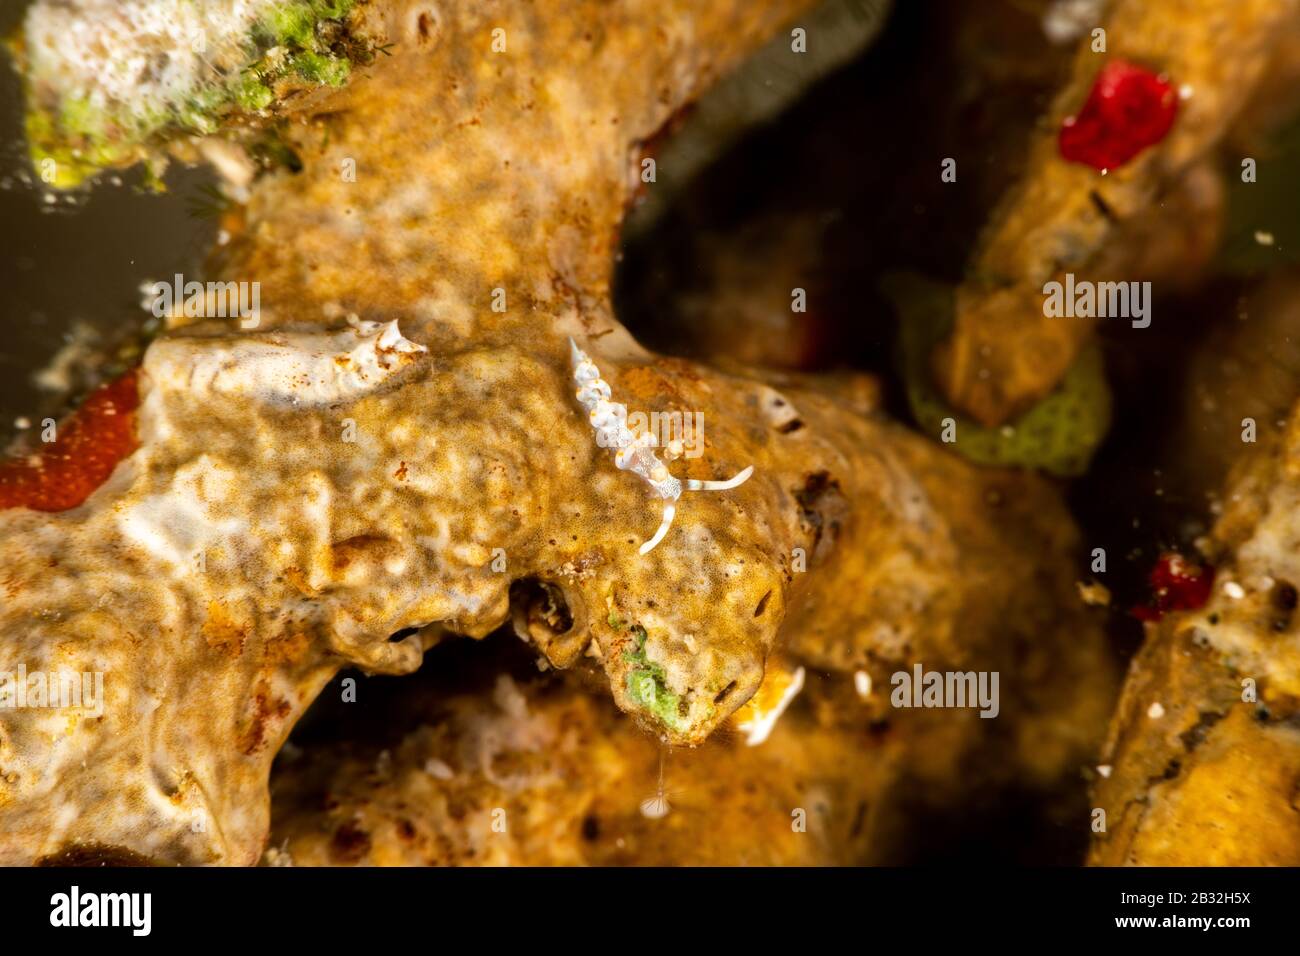 Die schönsten Unterwasser Schnecken des Indischen und Pazifischen Ozean Stockfoto